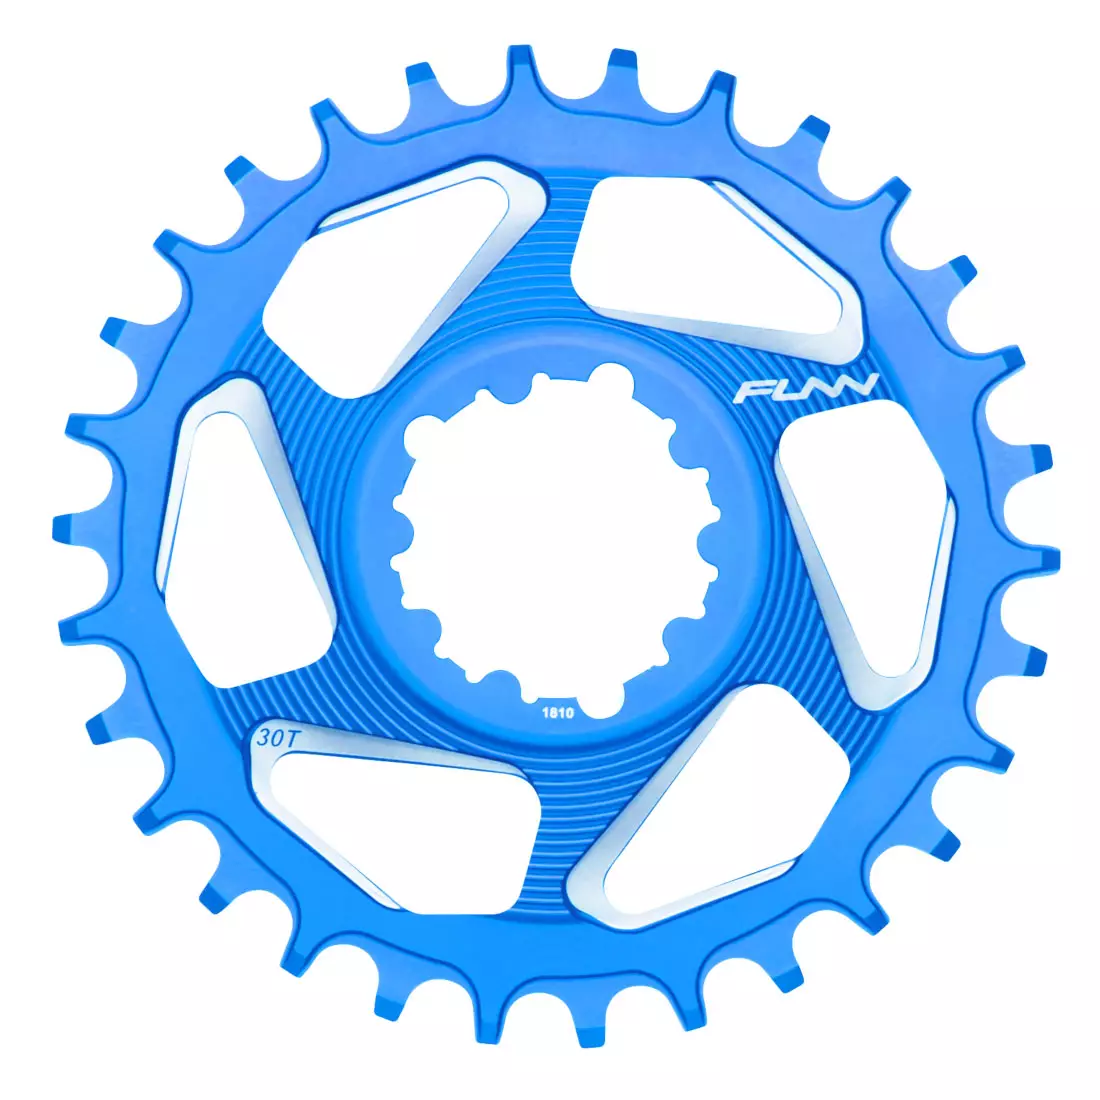 FUNN SOLO DX NARROW-WIDE BOOST 28T blaues Ritzel für Fahrradkurbel